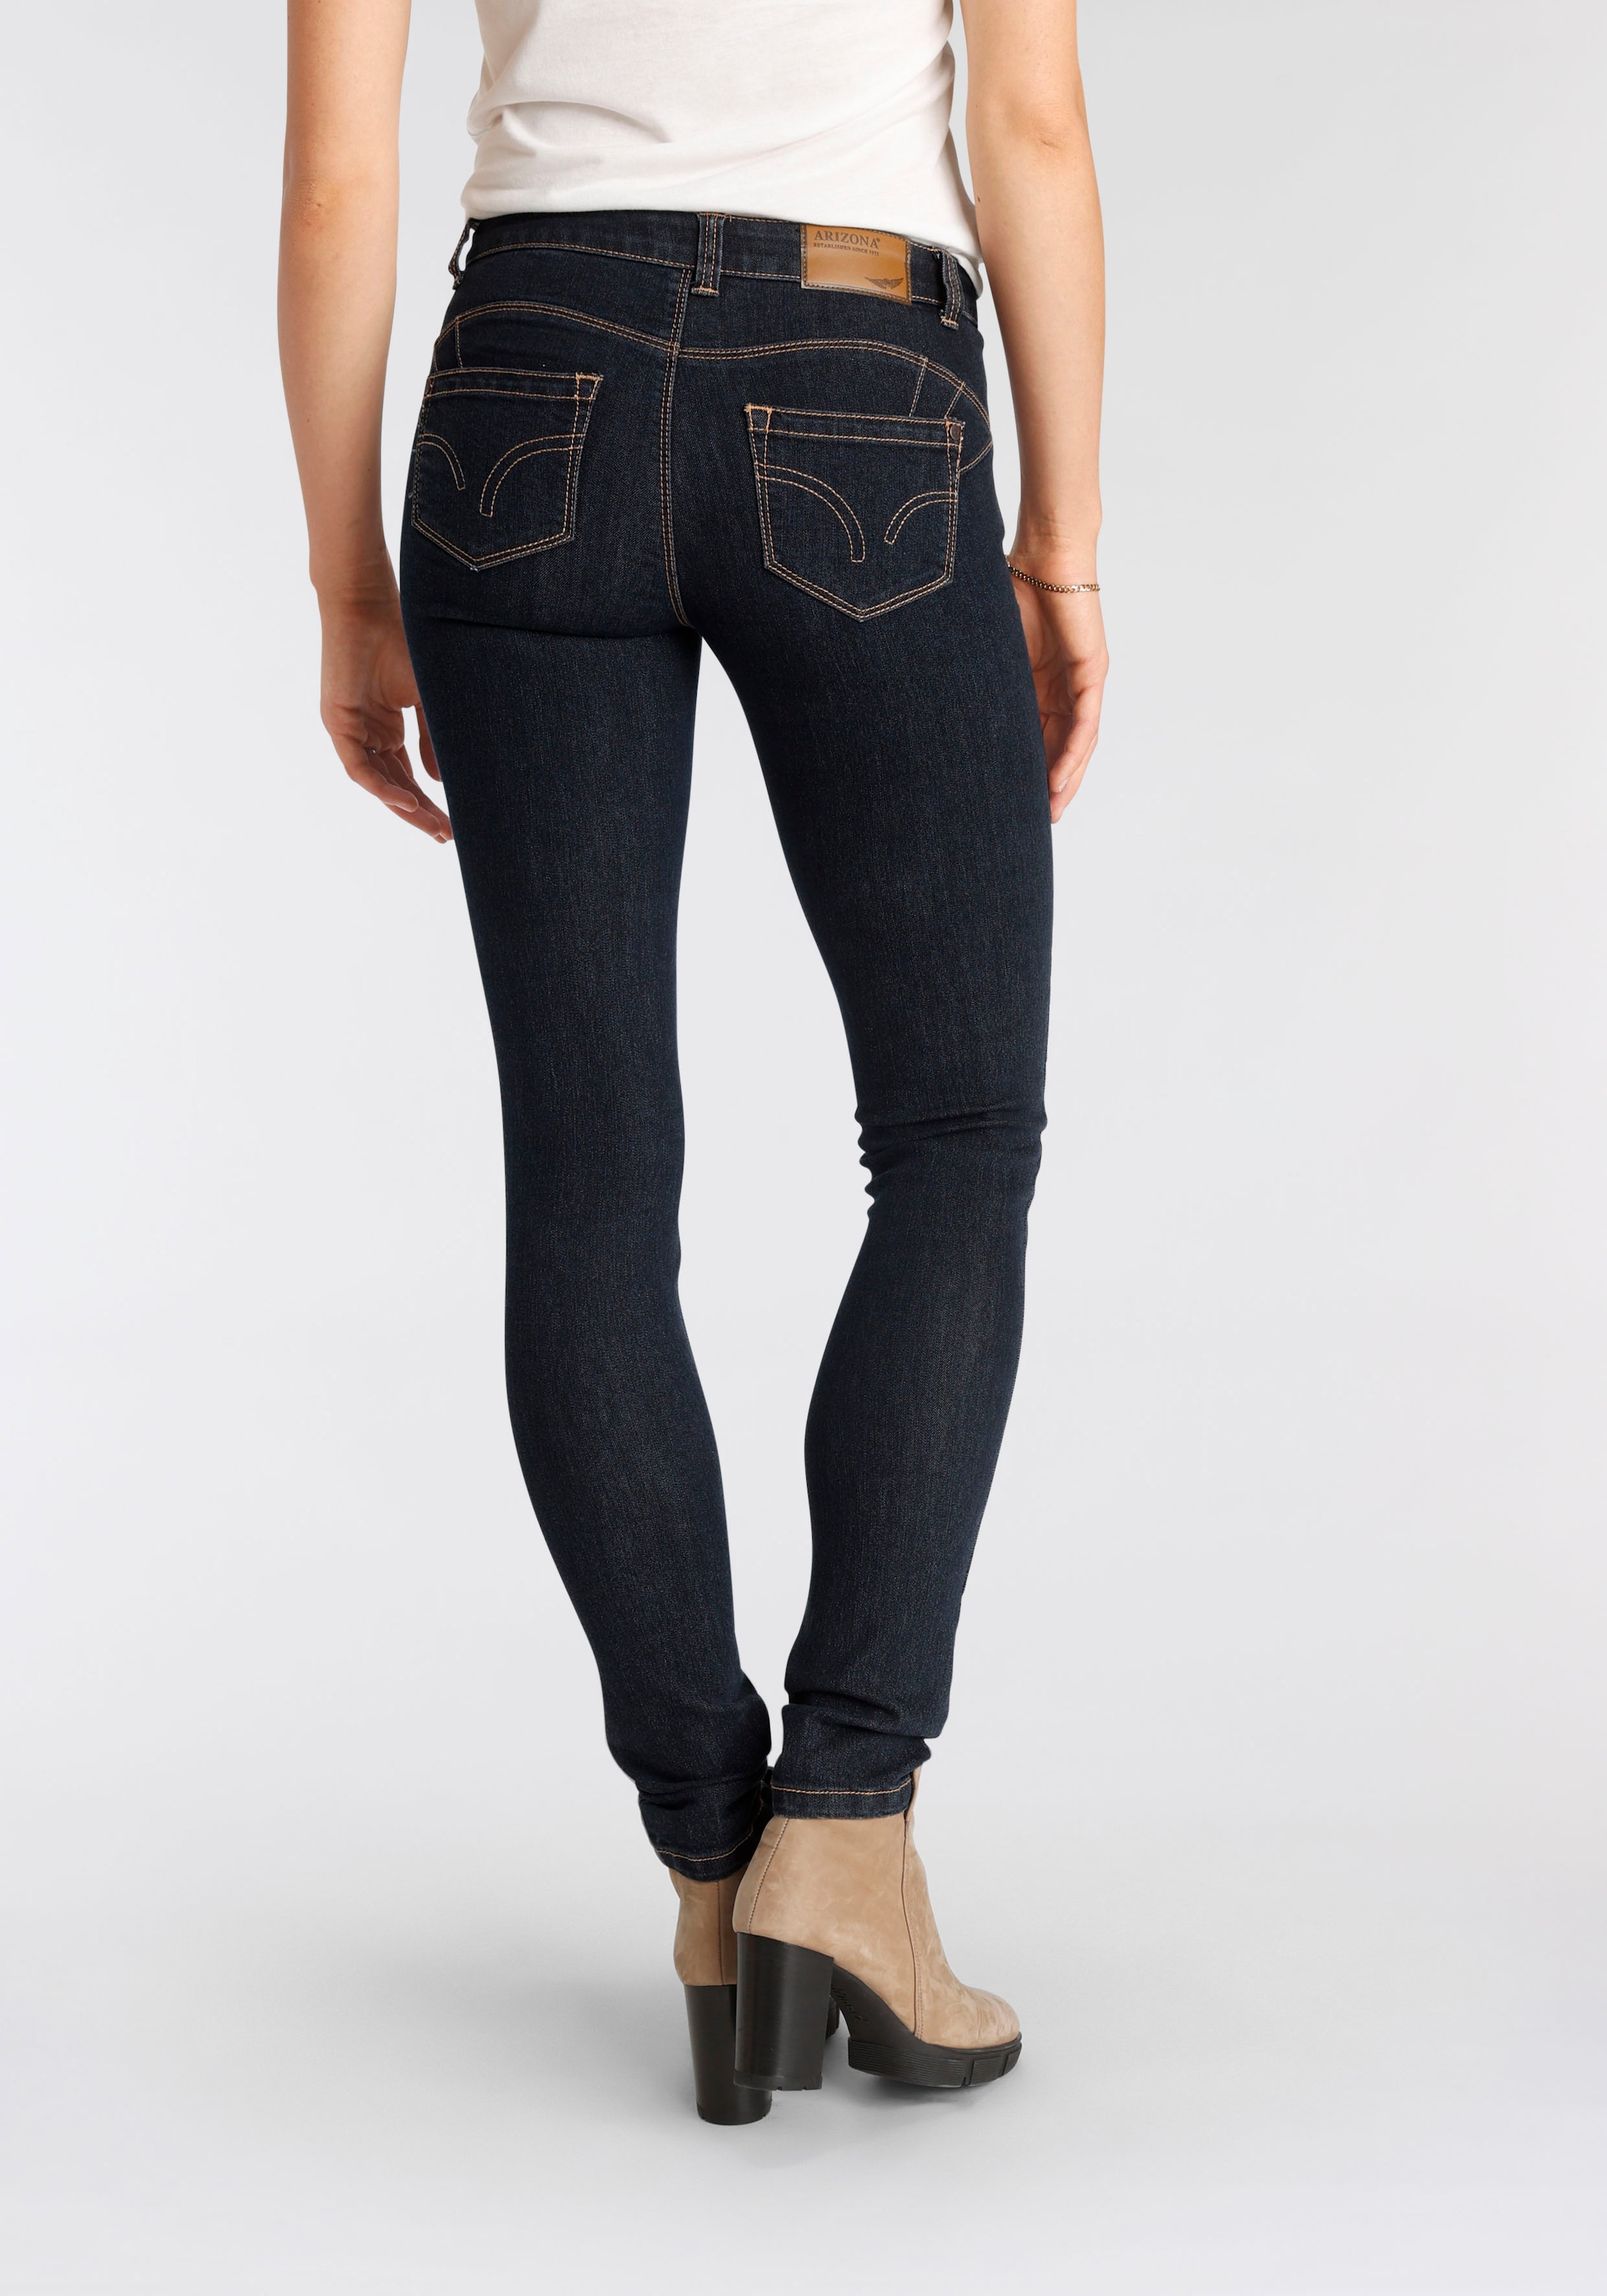 Nachhaltige Jeans - günstige Damenmode bestellen online